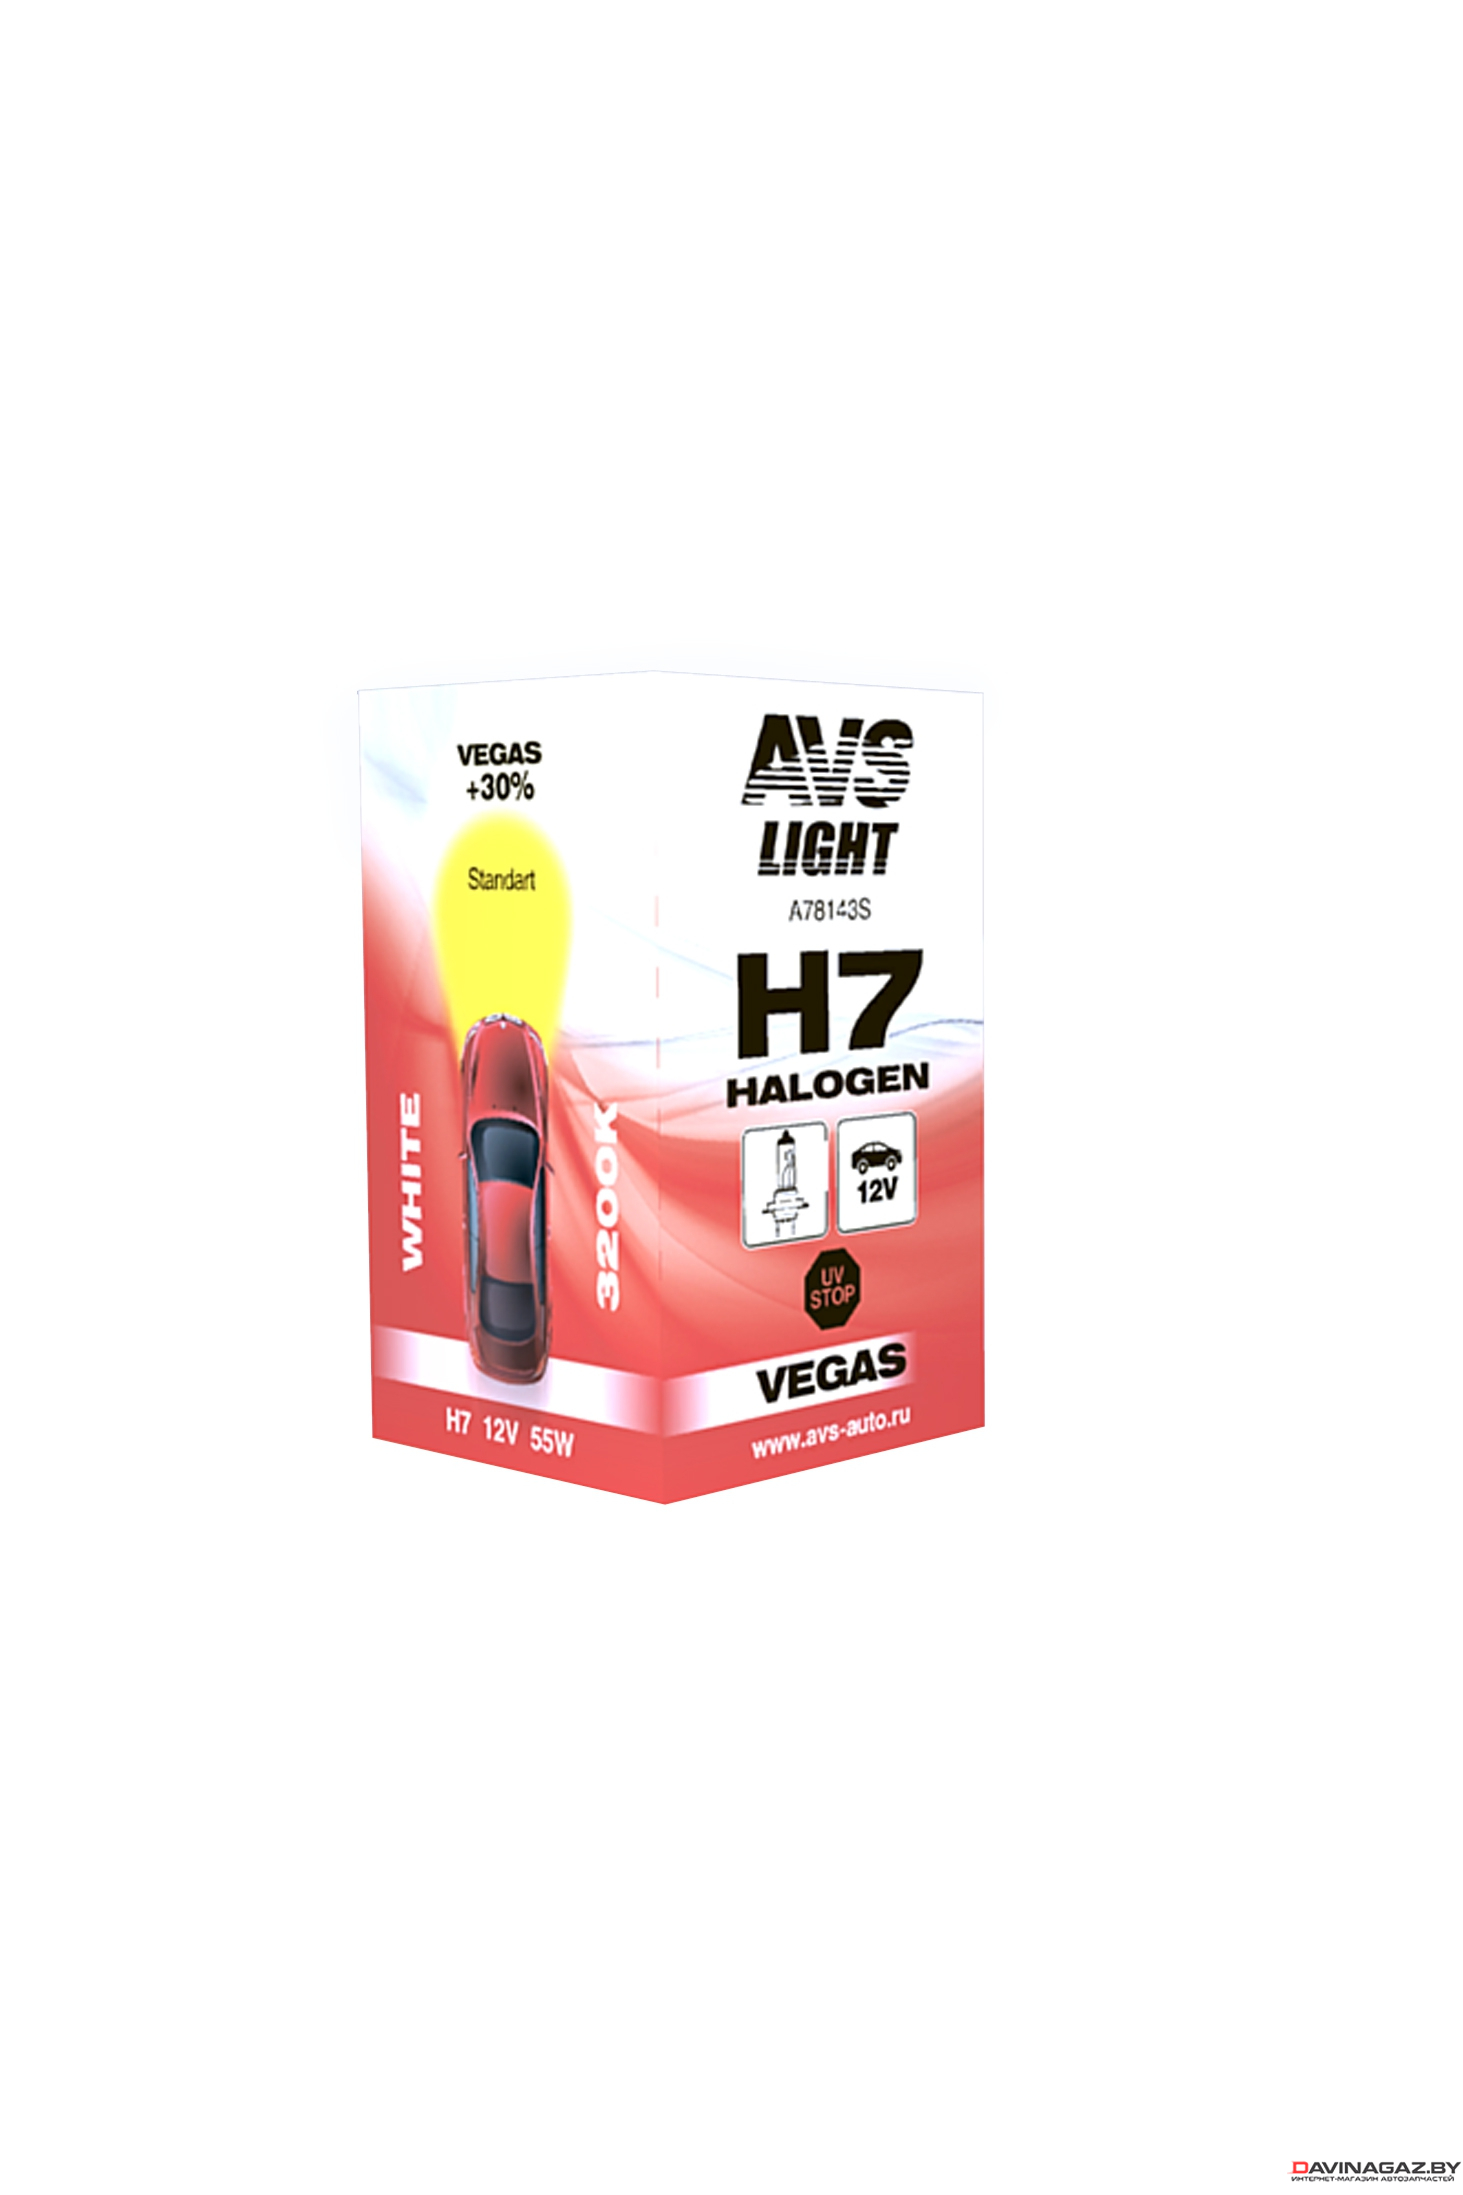 AVS - Автомобильная галогенная лампа Vegas H7 12V 55W, 1шт / A78143S